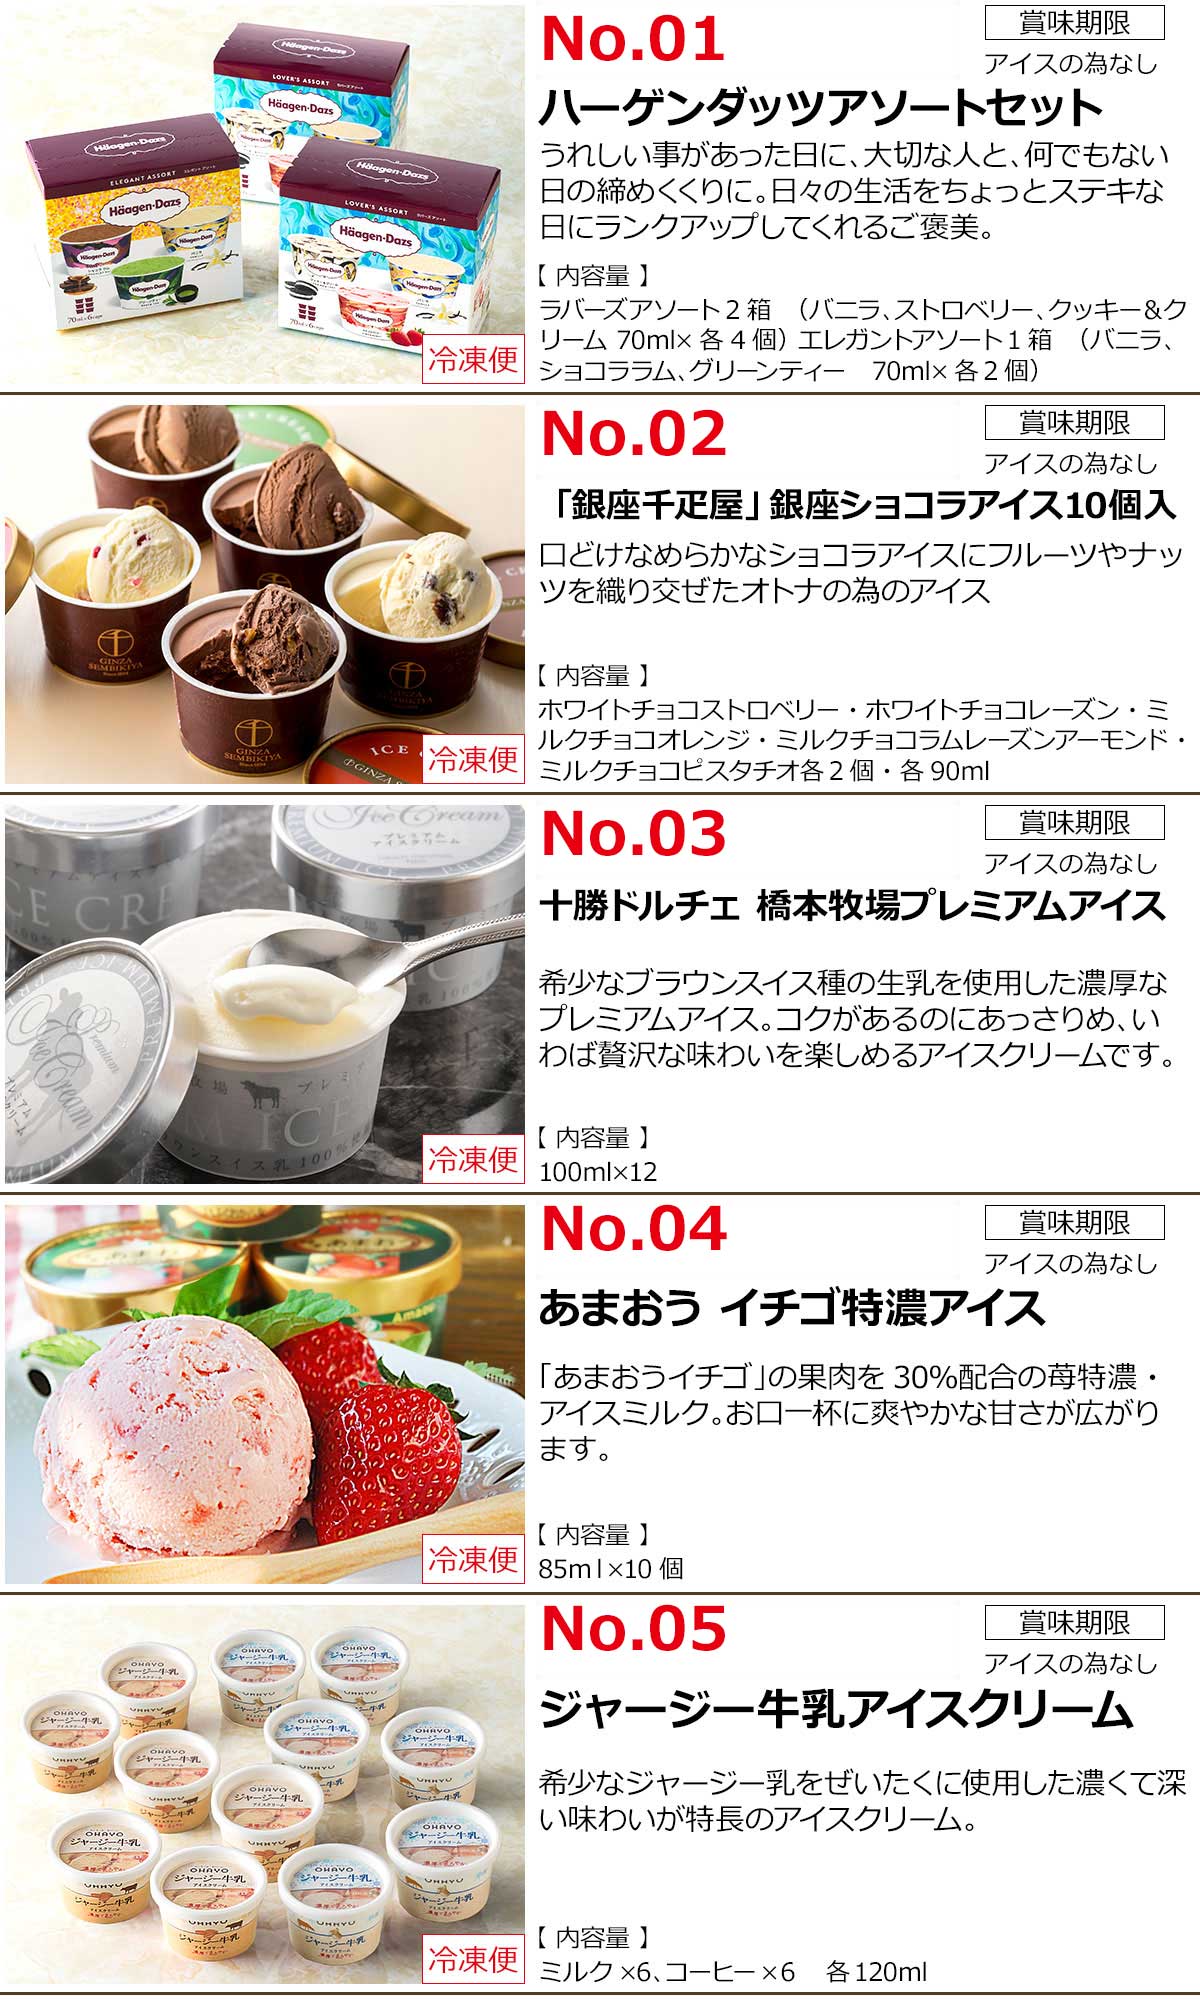 選べるアイスクリーム 5種